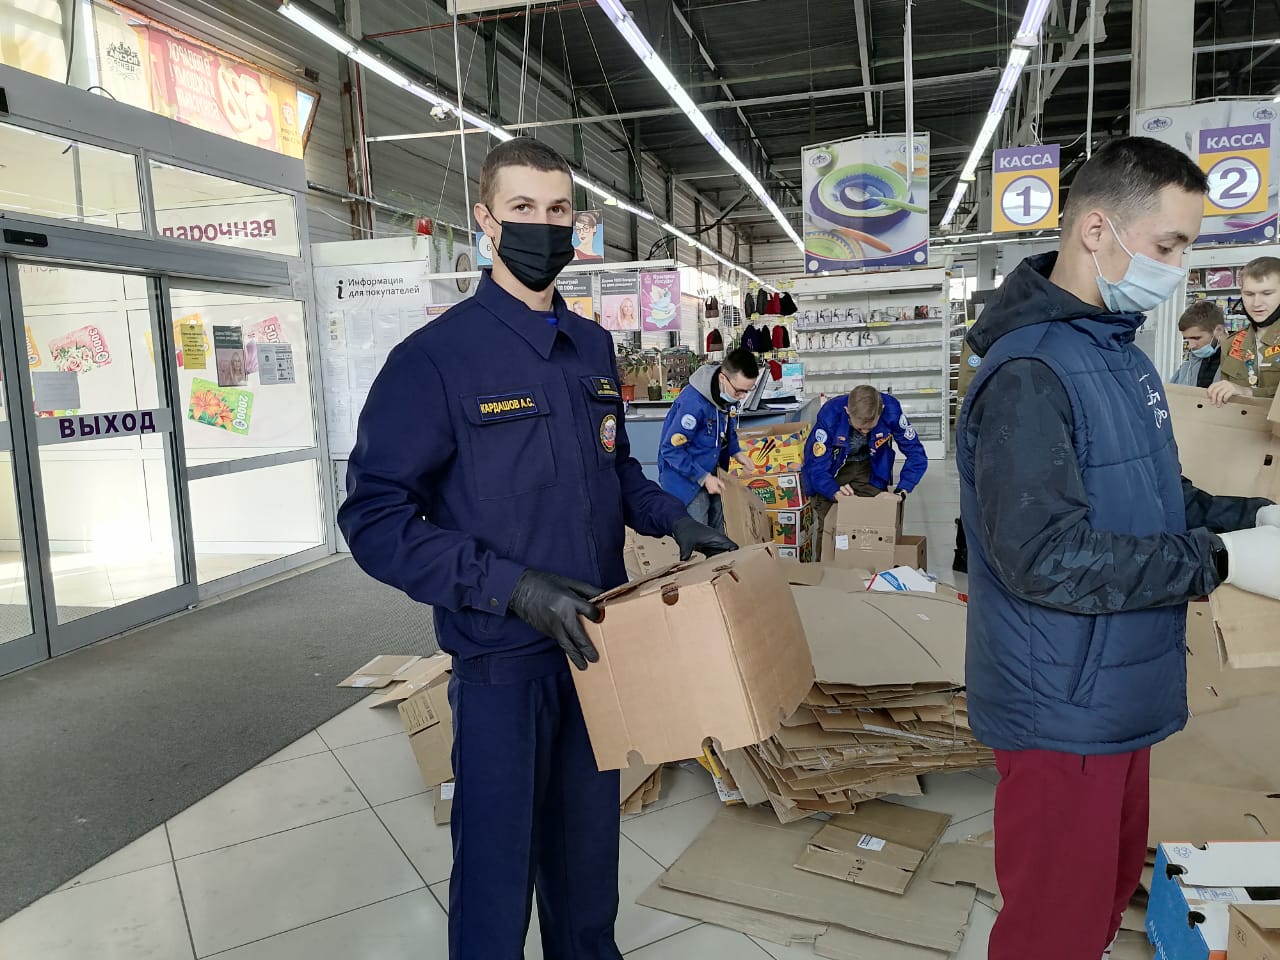 Спасатели и студенты приняли участие в перепрофилировании торгового здания под инфекционный госпиталь в г.Барнауле